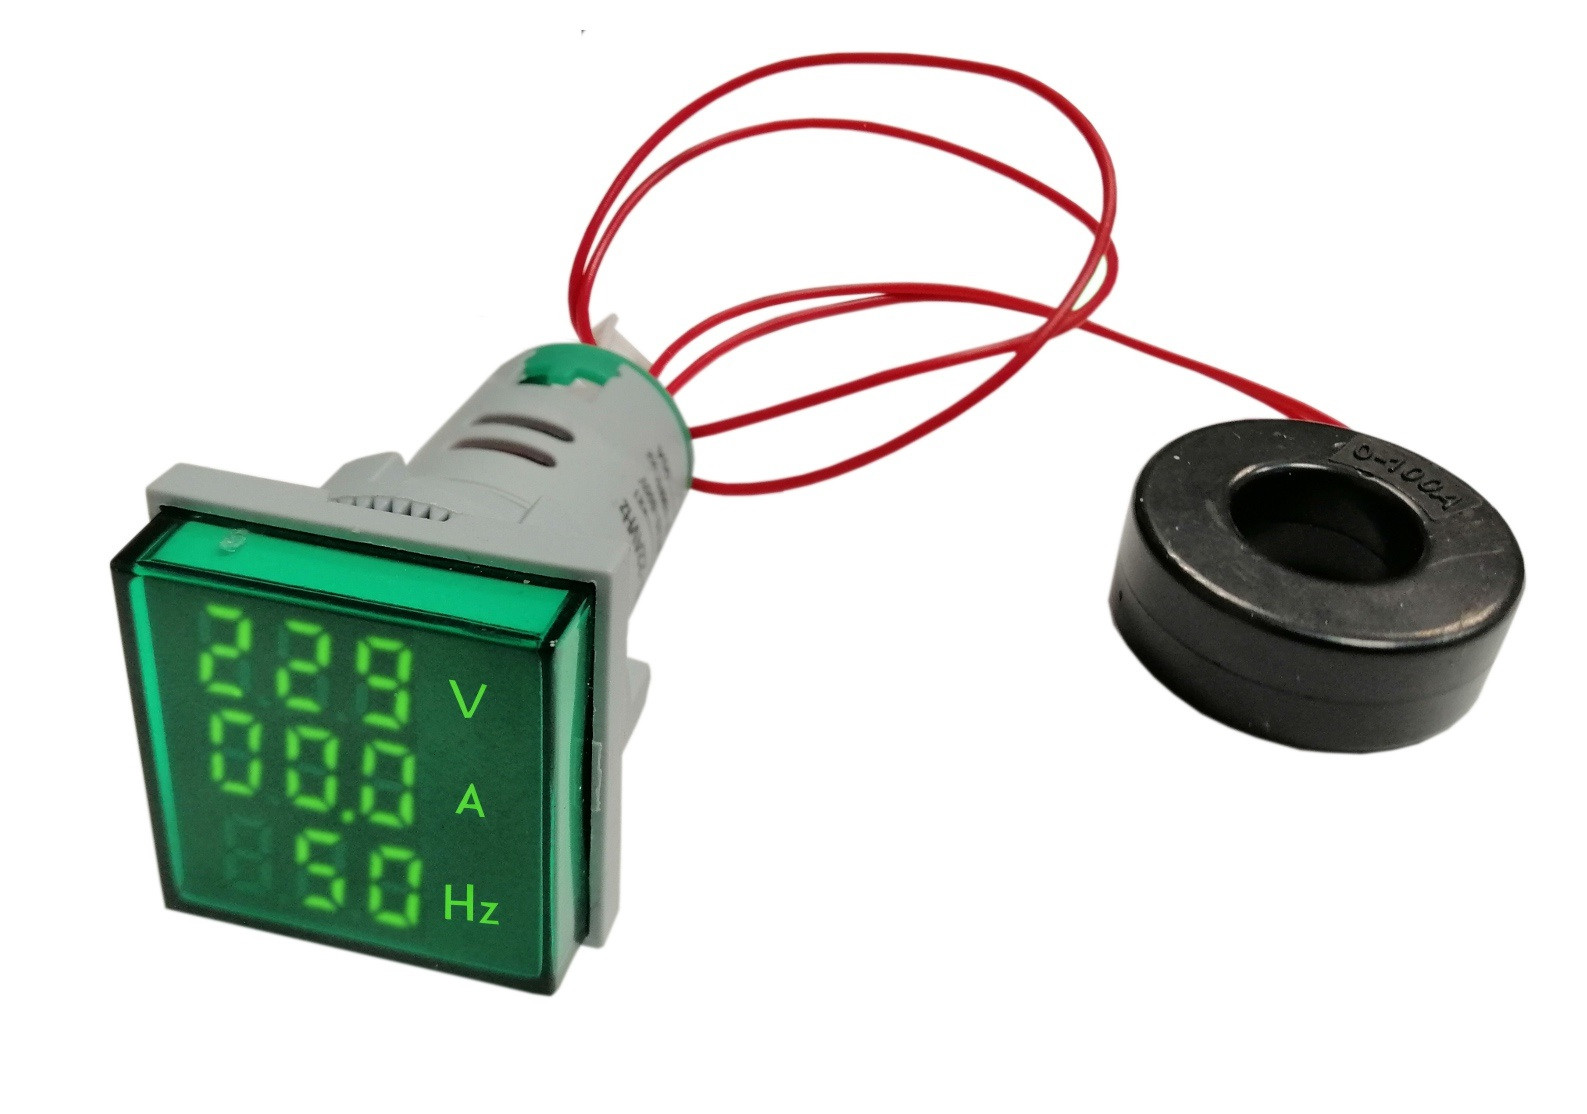 Woltomierz/amperomierz/mernik częstotliwości LED 30x30mm 20-500V/100A zielony
